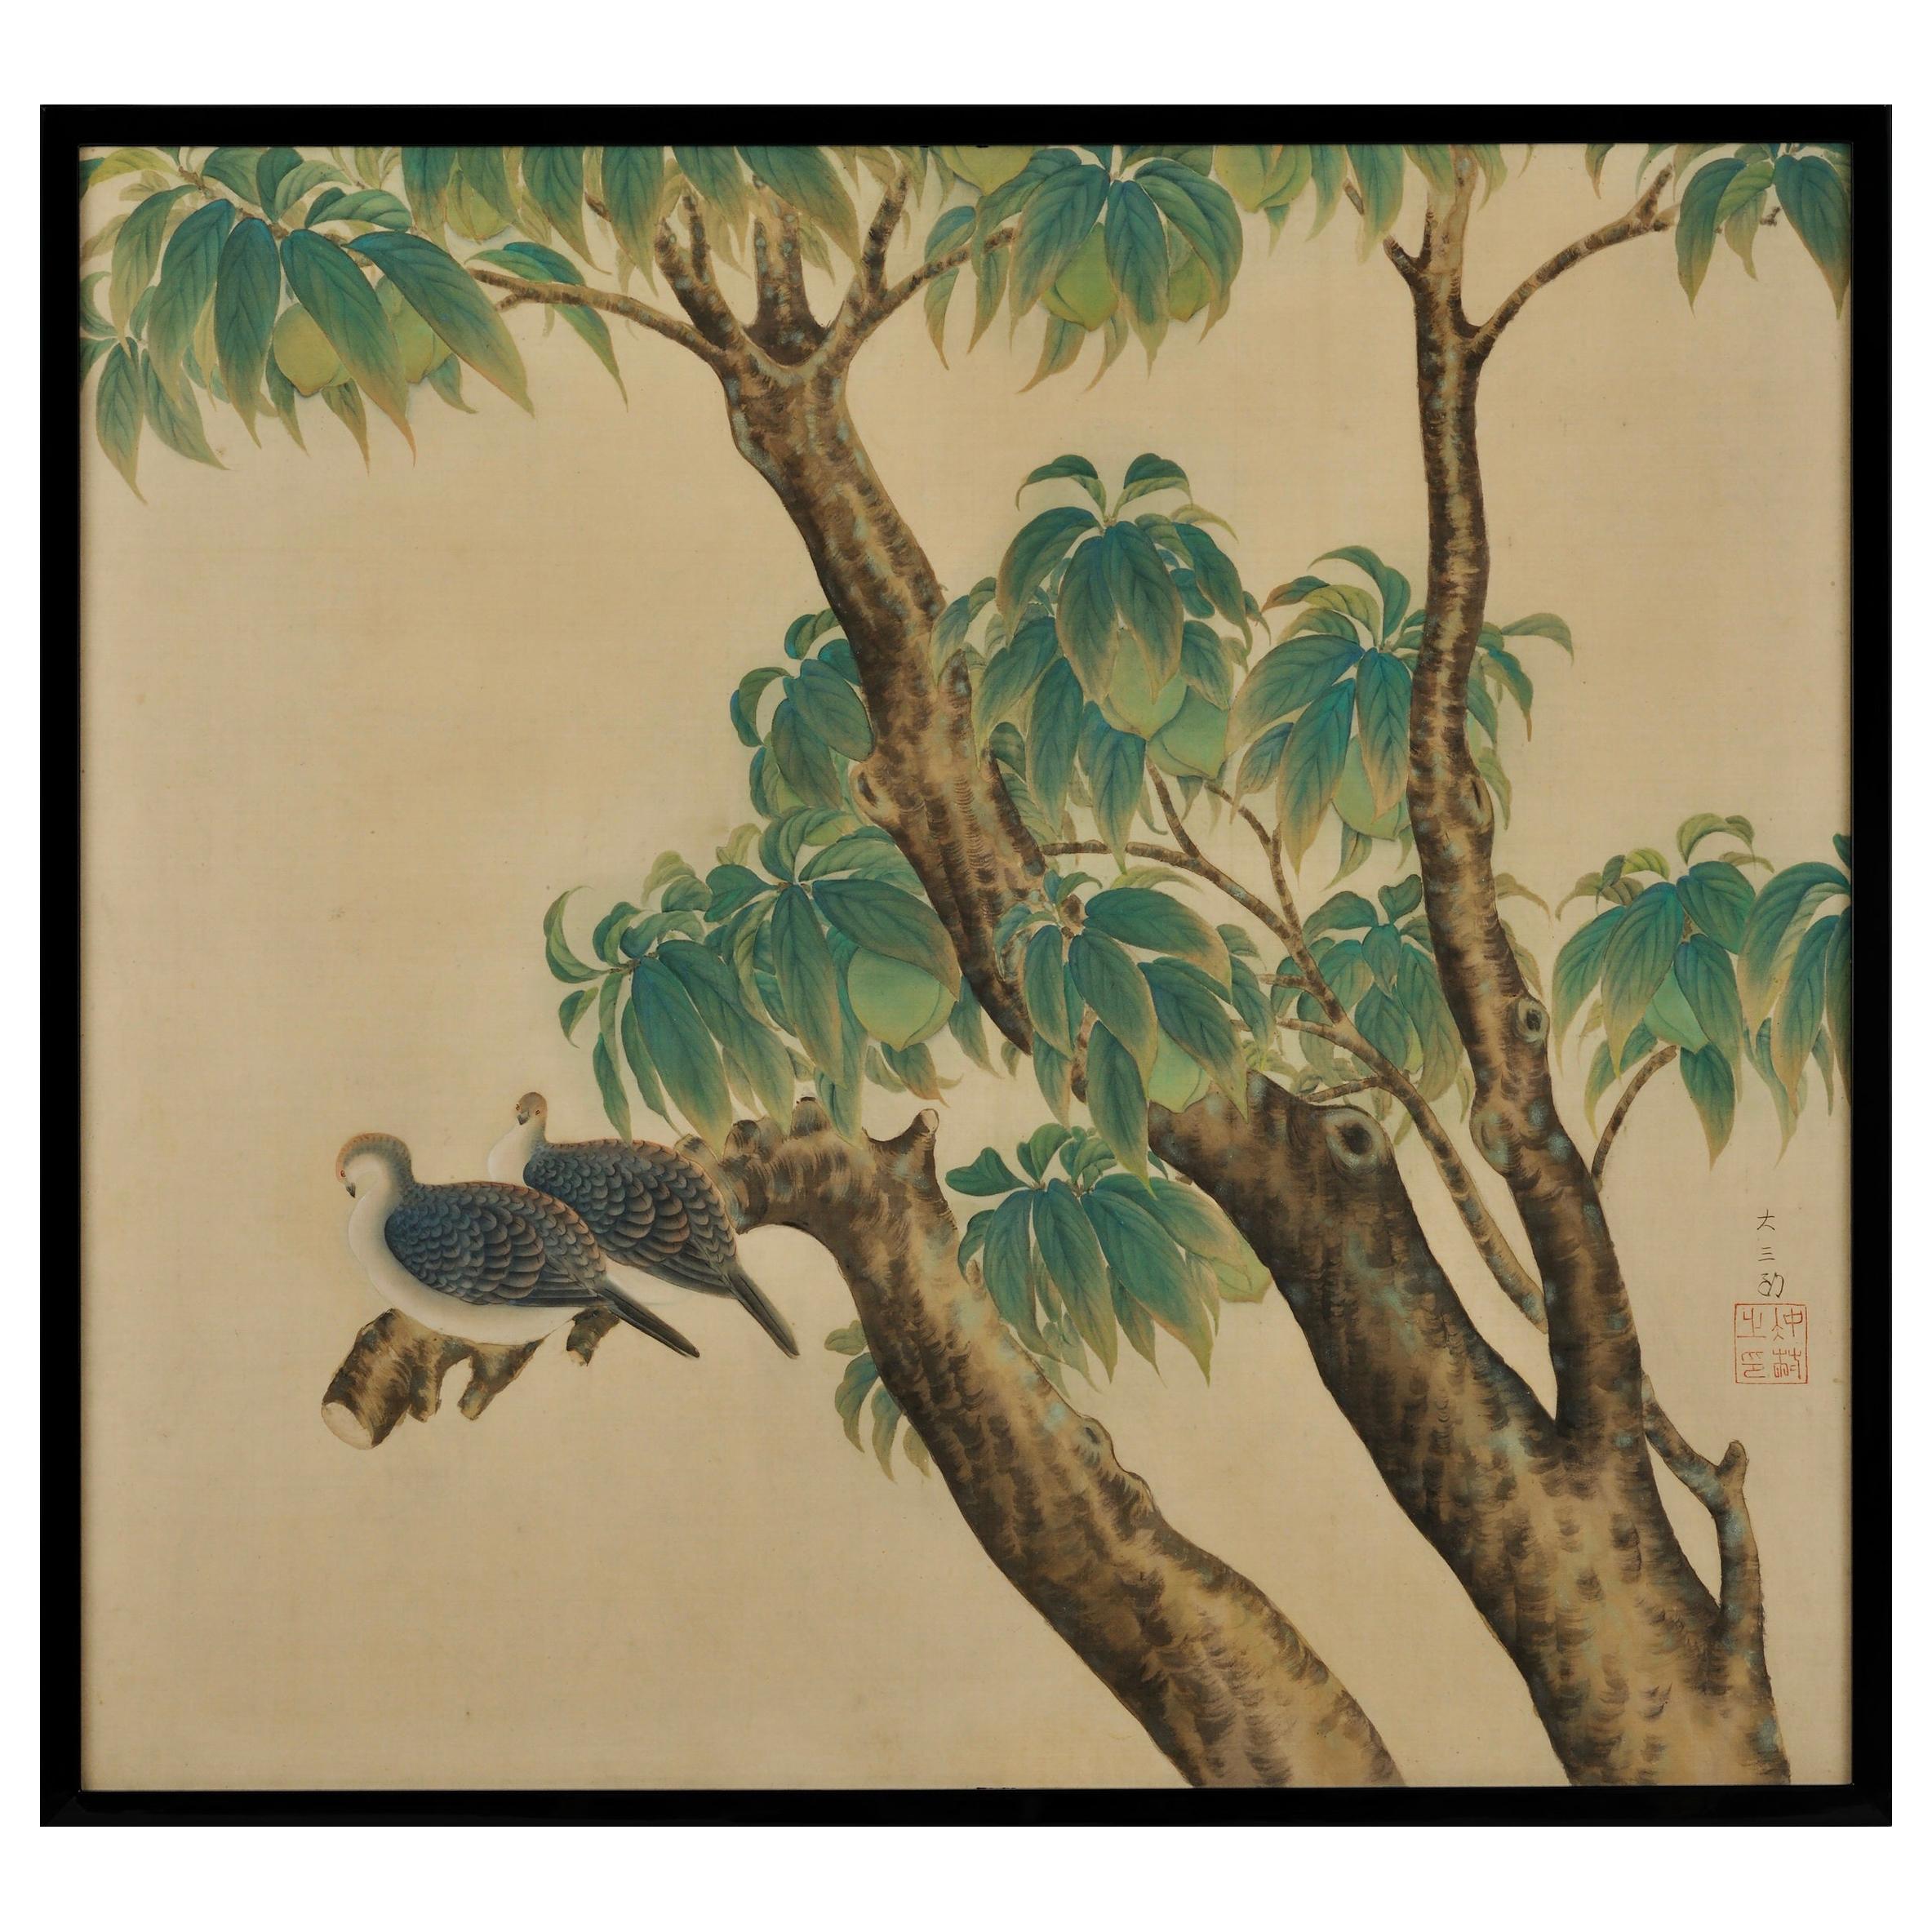 Gerahmtes japanisches Gemälde aus Seide, Schildkrötenkäfer und Pfirsichen, Taisho-Ära, um 1920